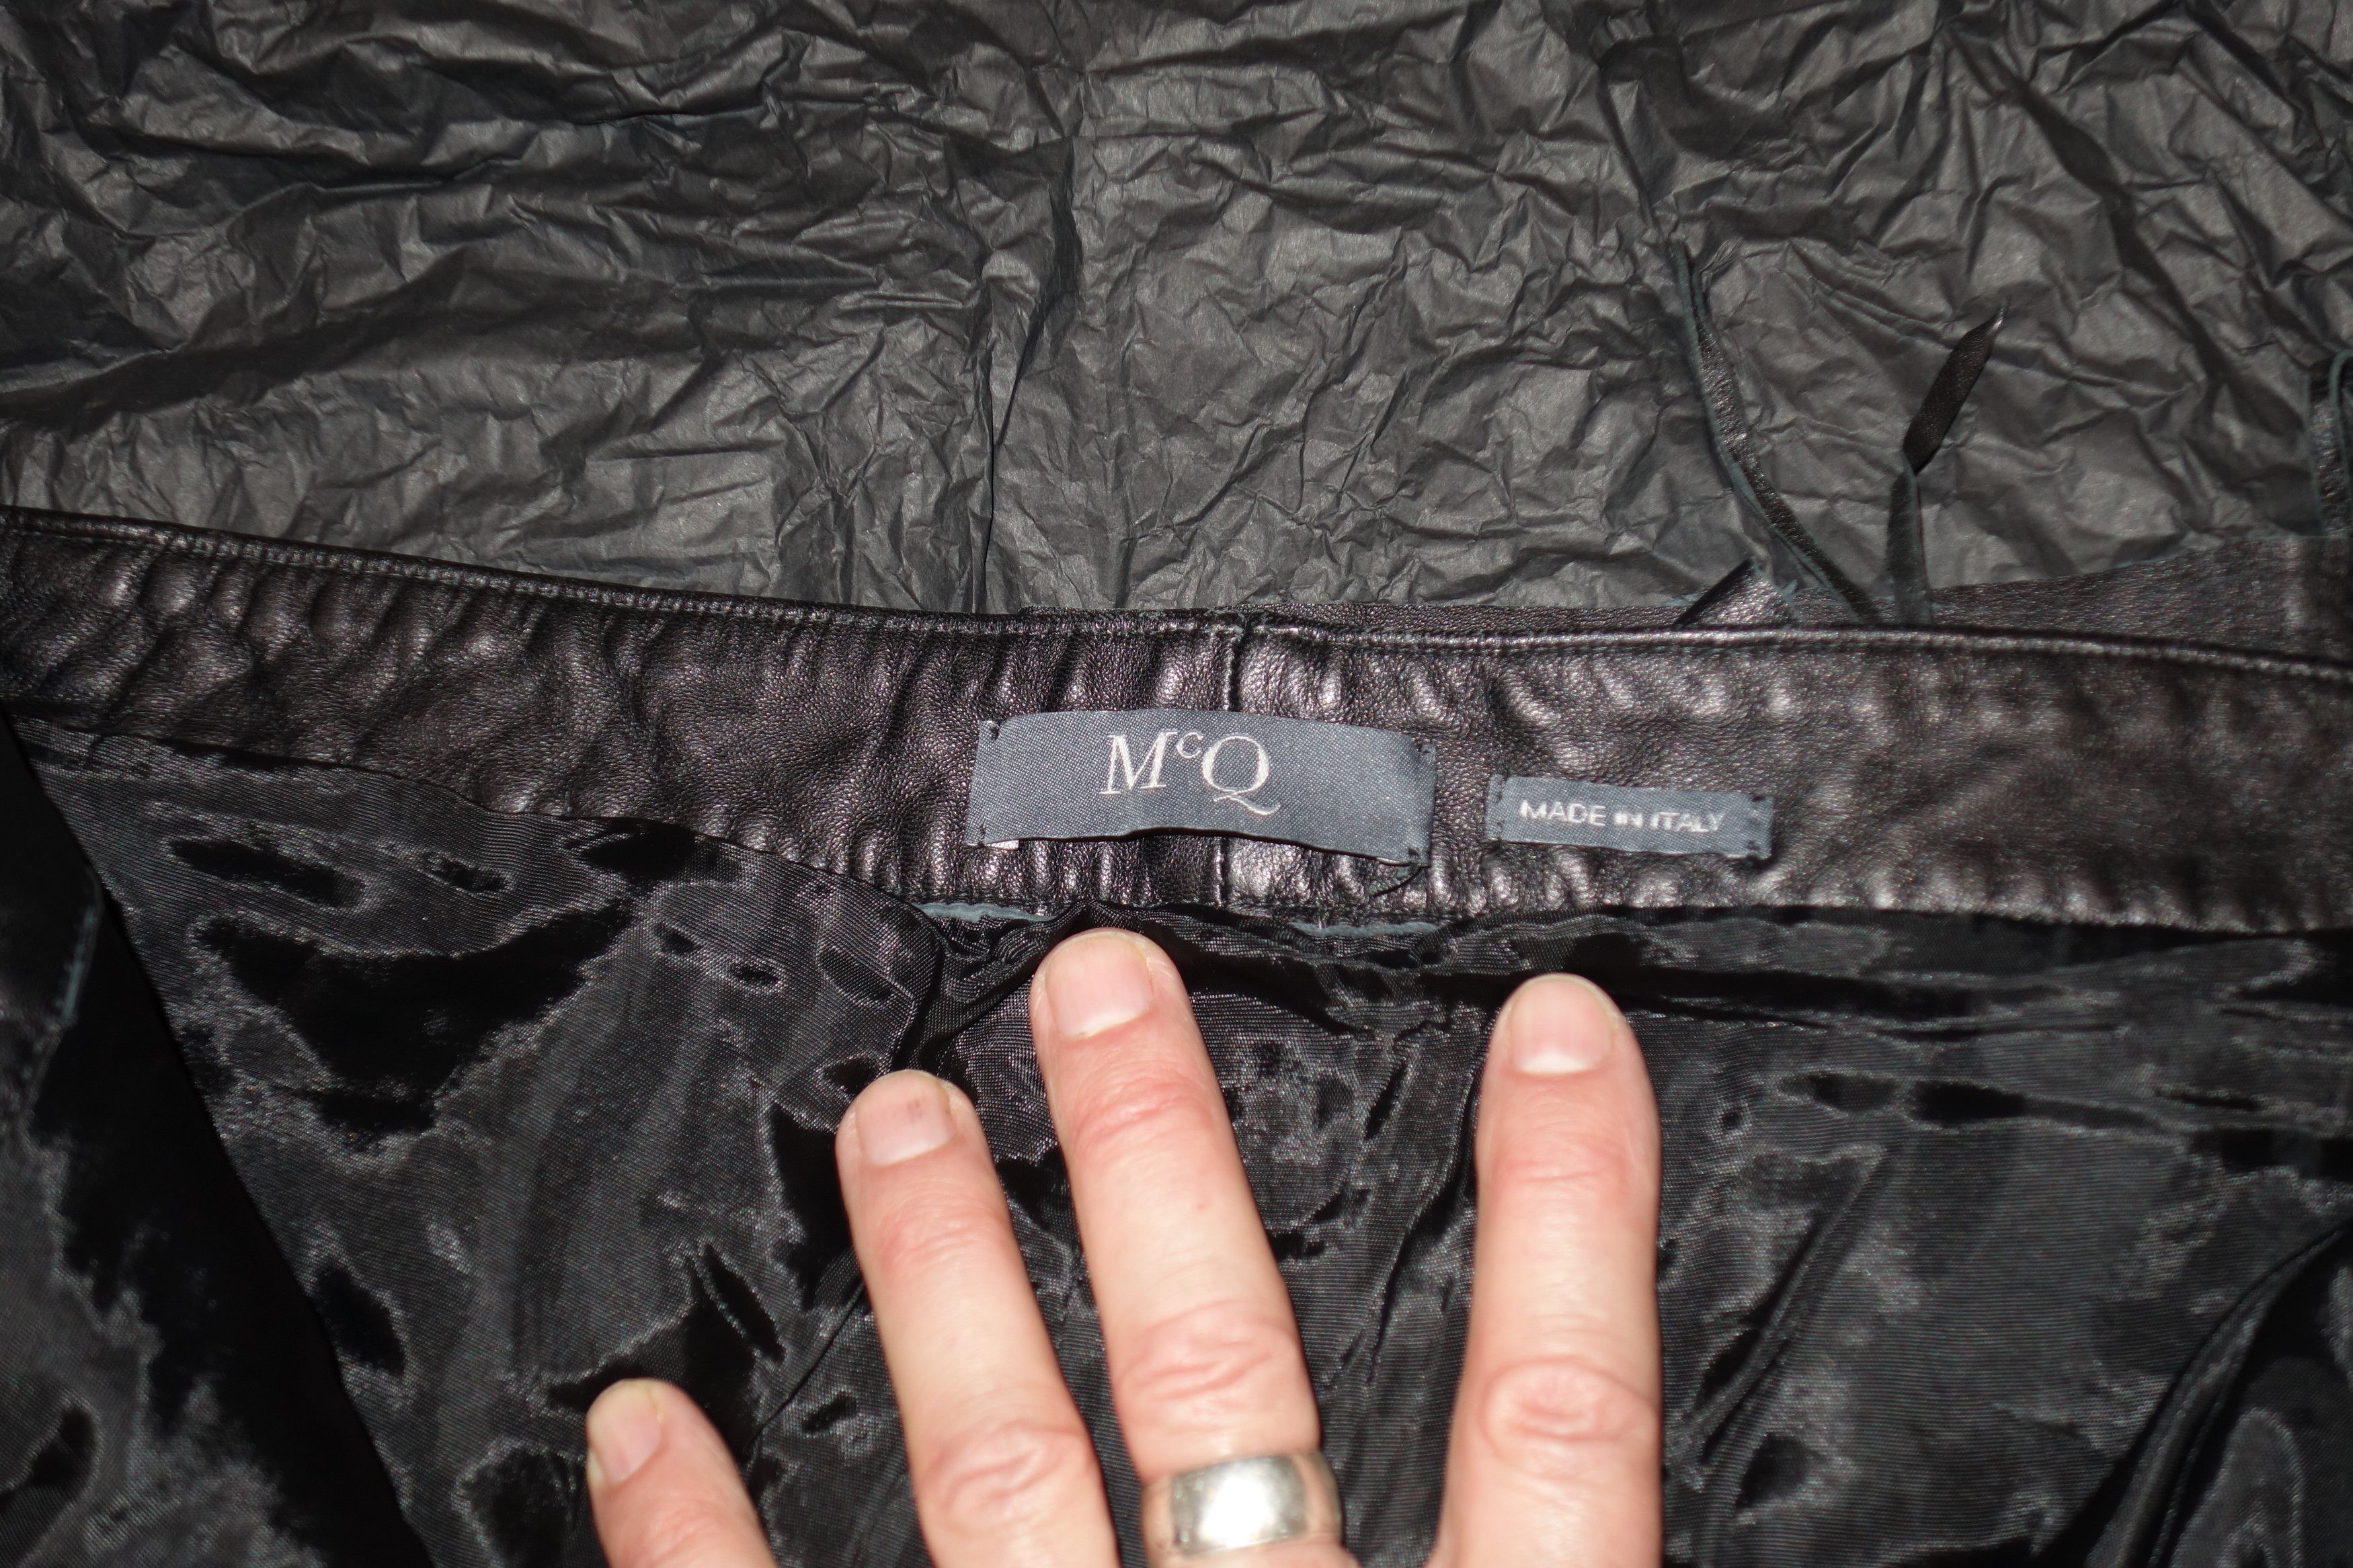 McQ Alexander McQueen Leather S&M / Biker / Lace Up Jeans Size US 32 / EU 48 - 6 Thumbnail